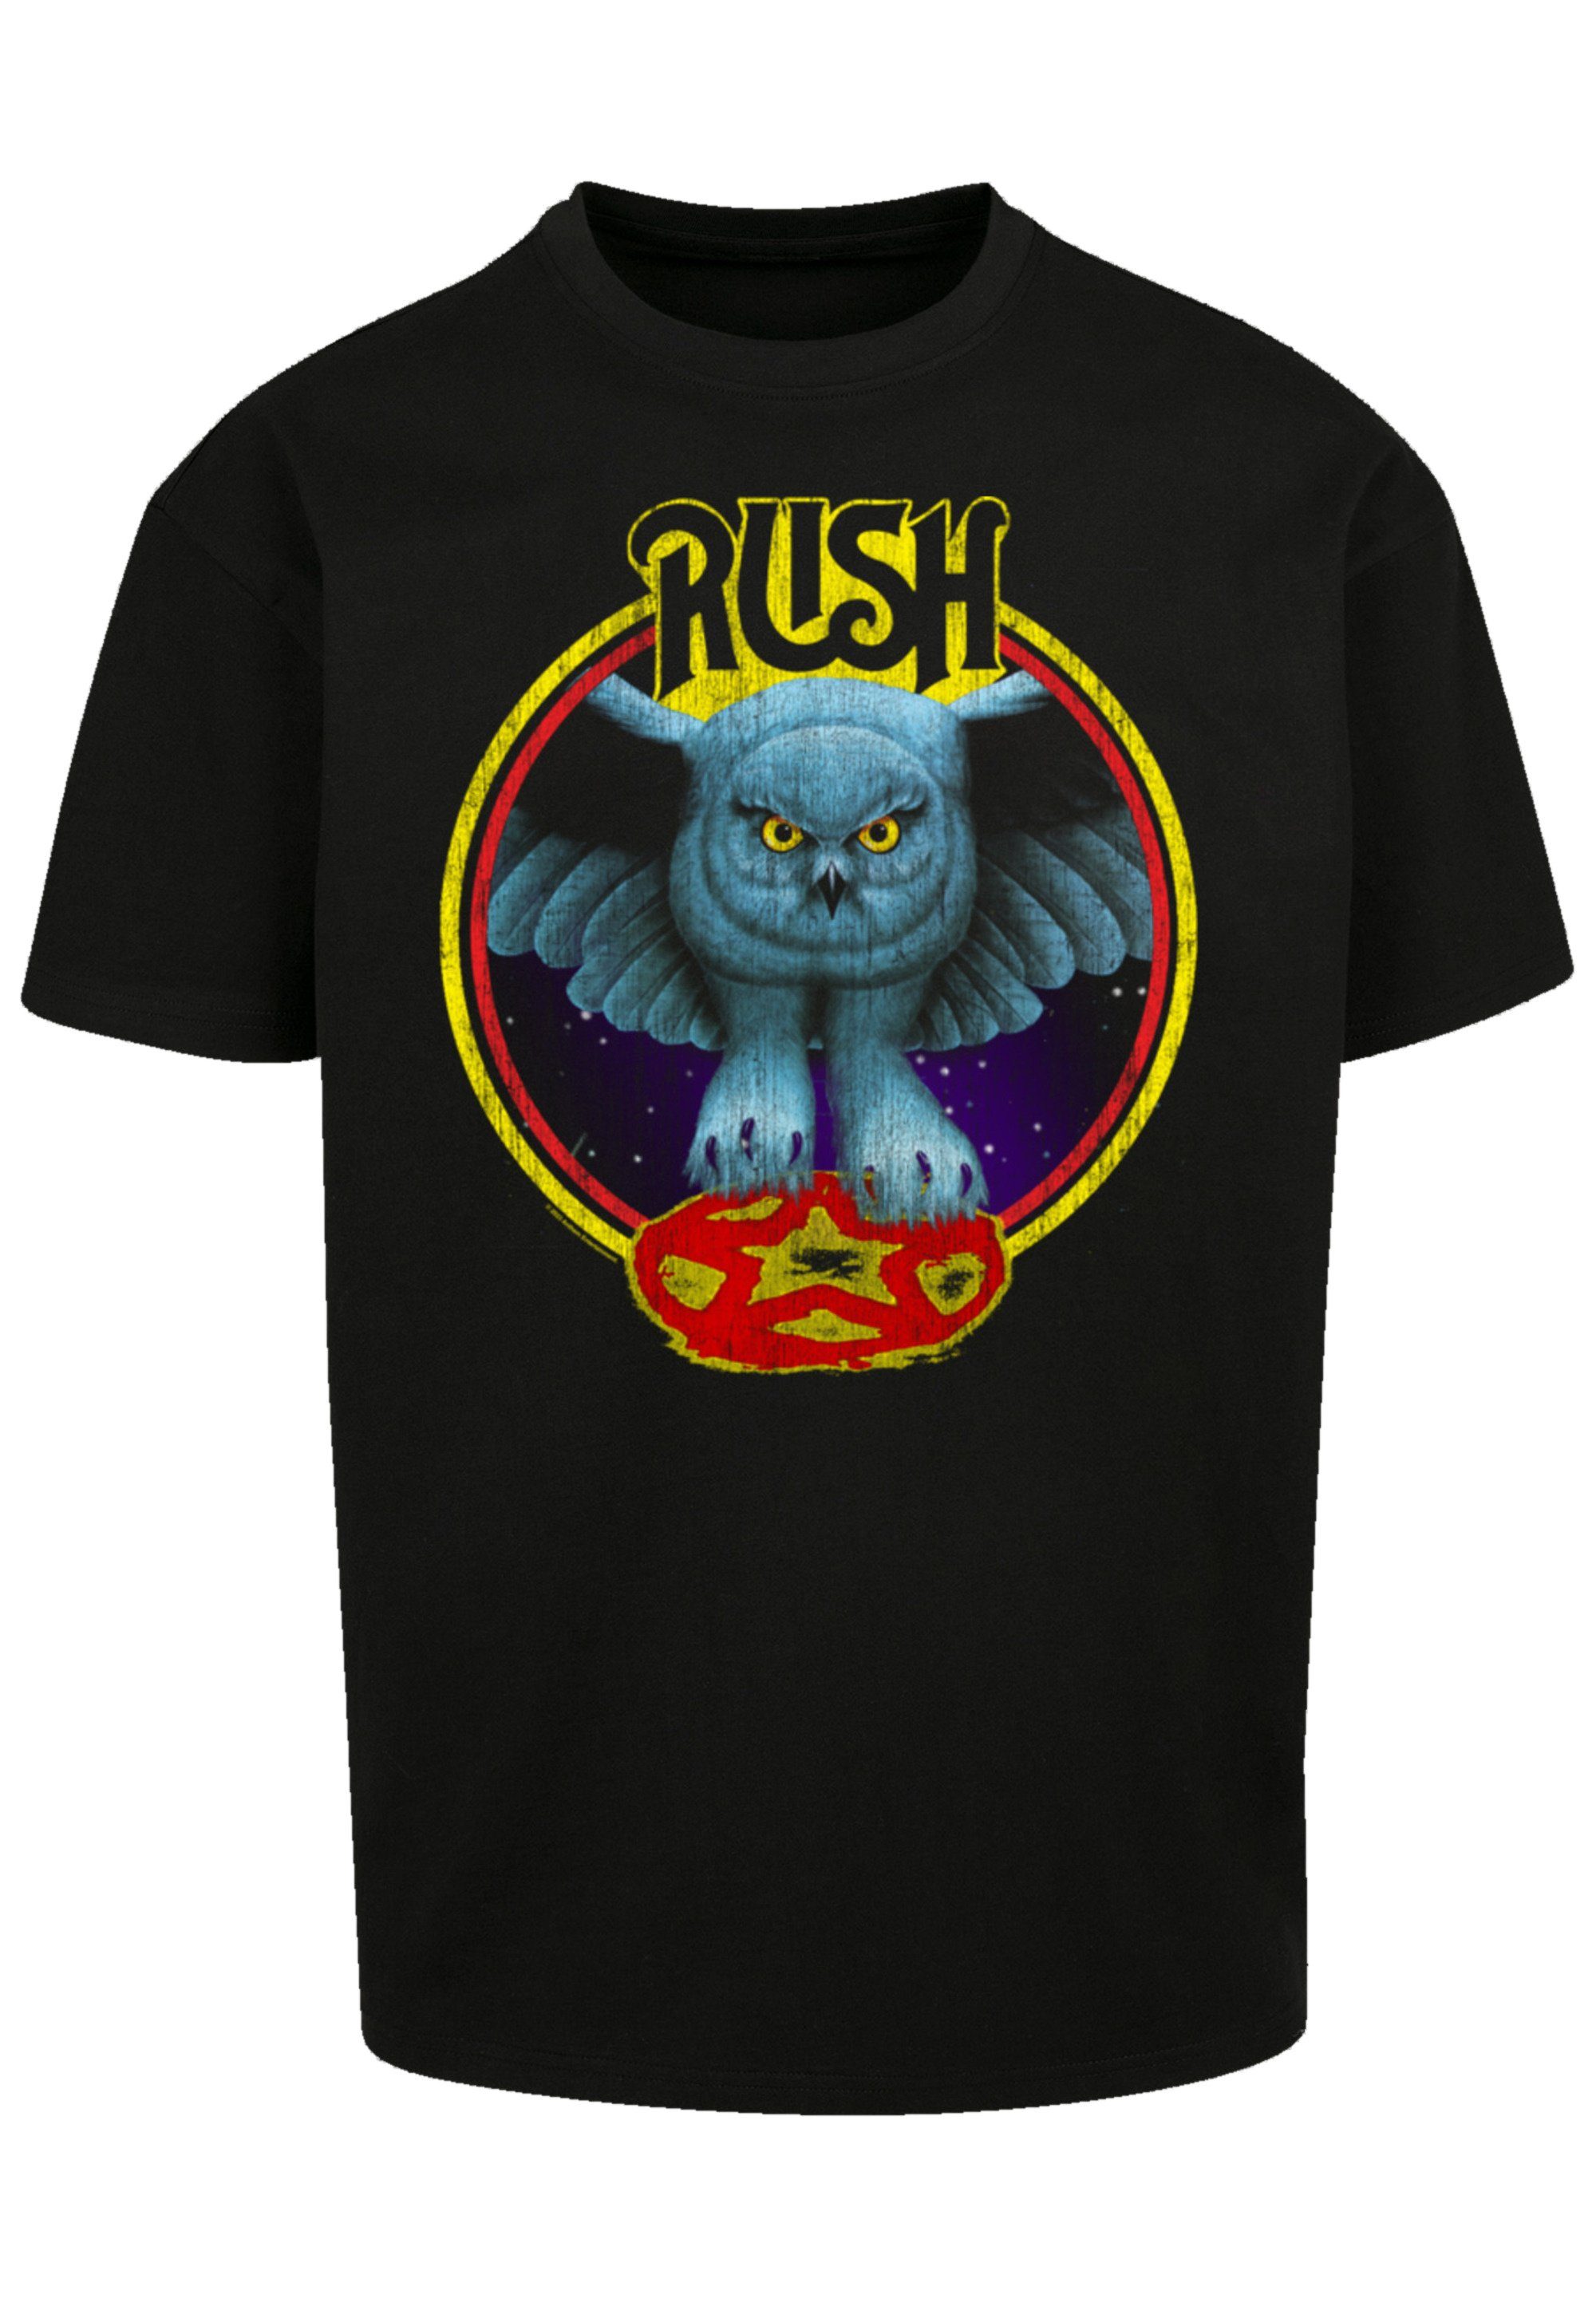 F4NT4STIC T-Shirt Rush Qualität By Rock Night schwarz Band Circle Premium Fly